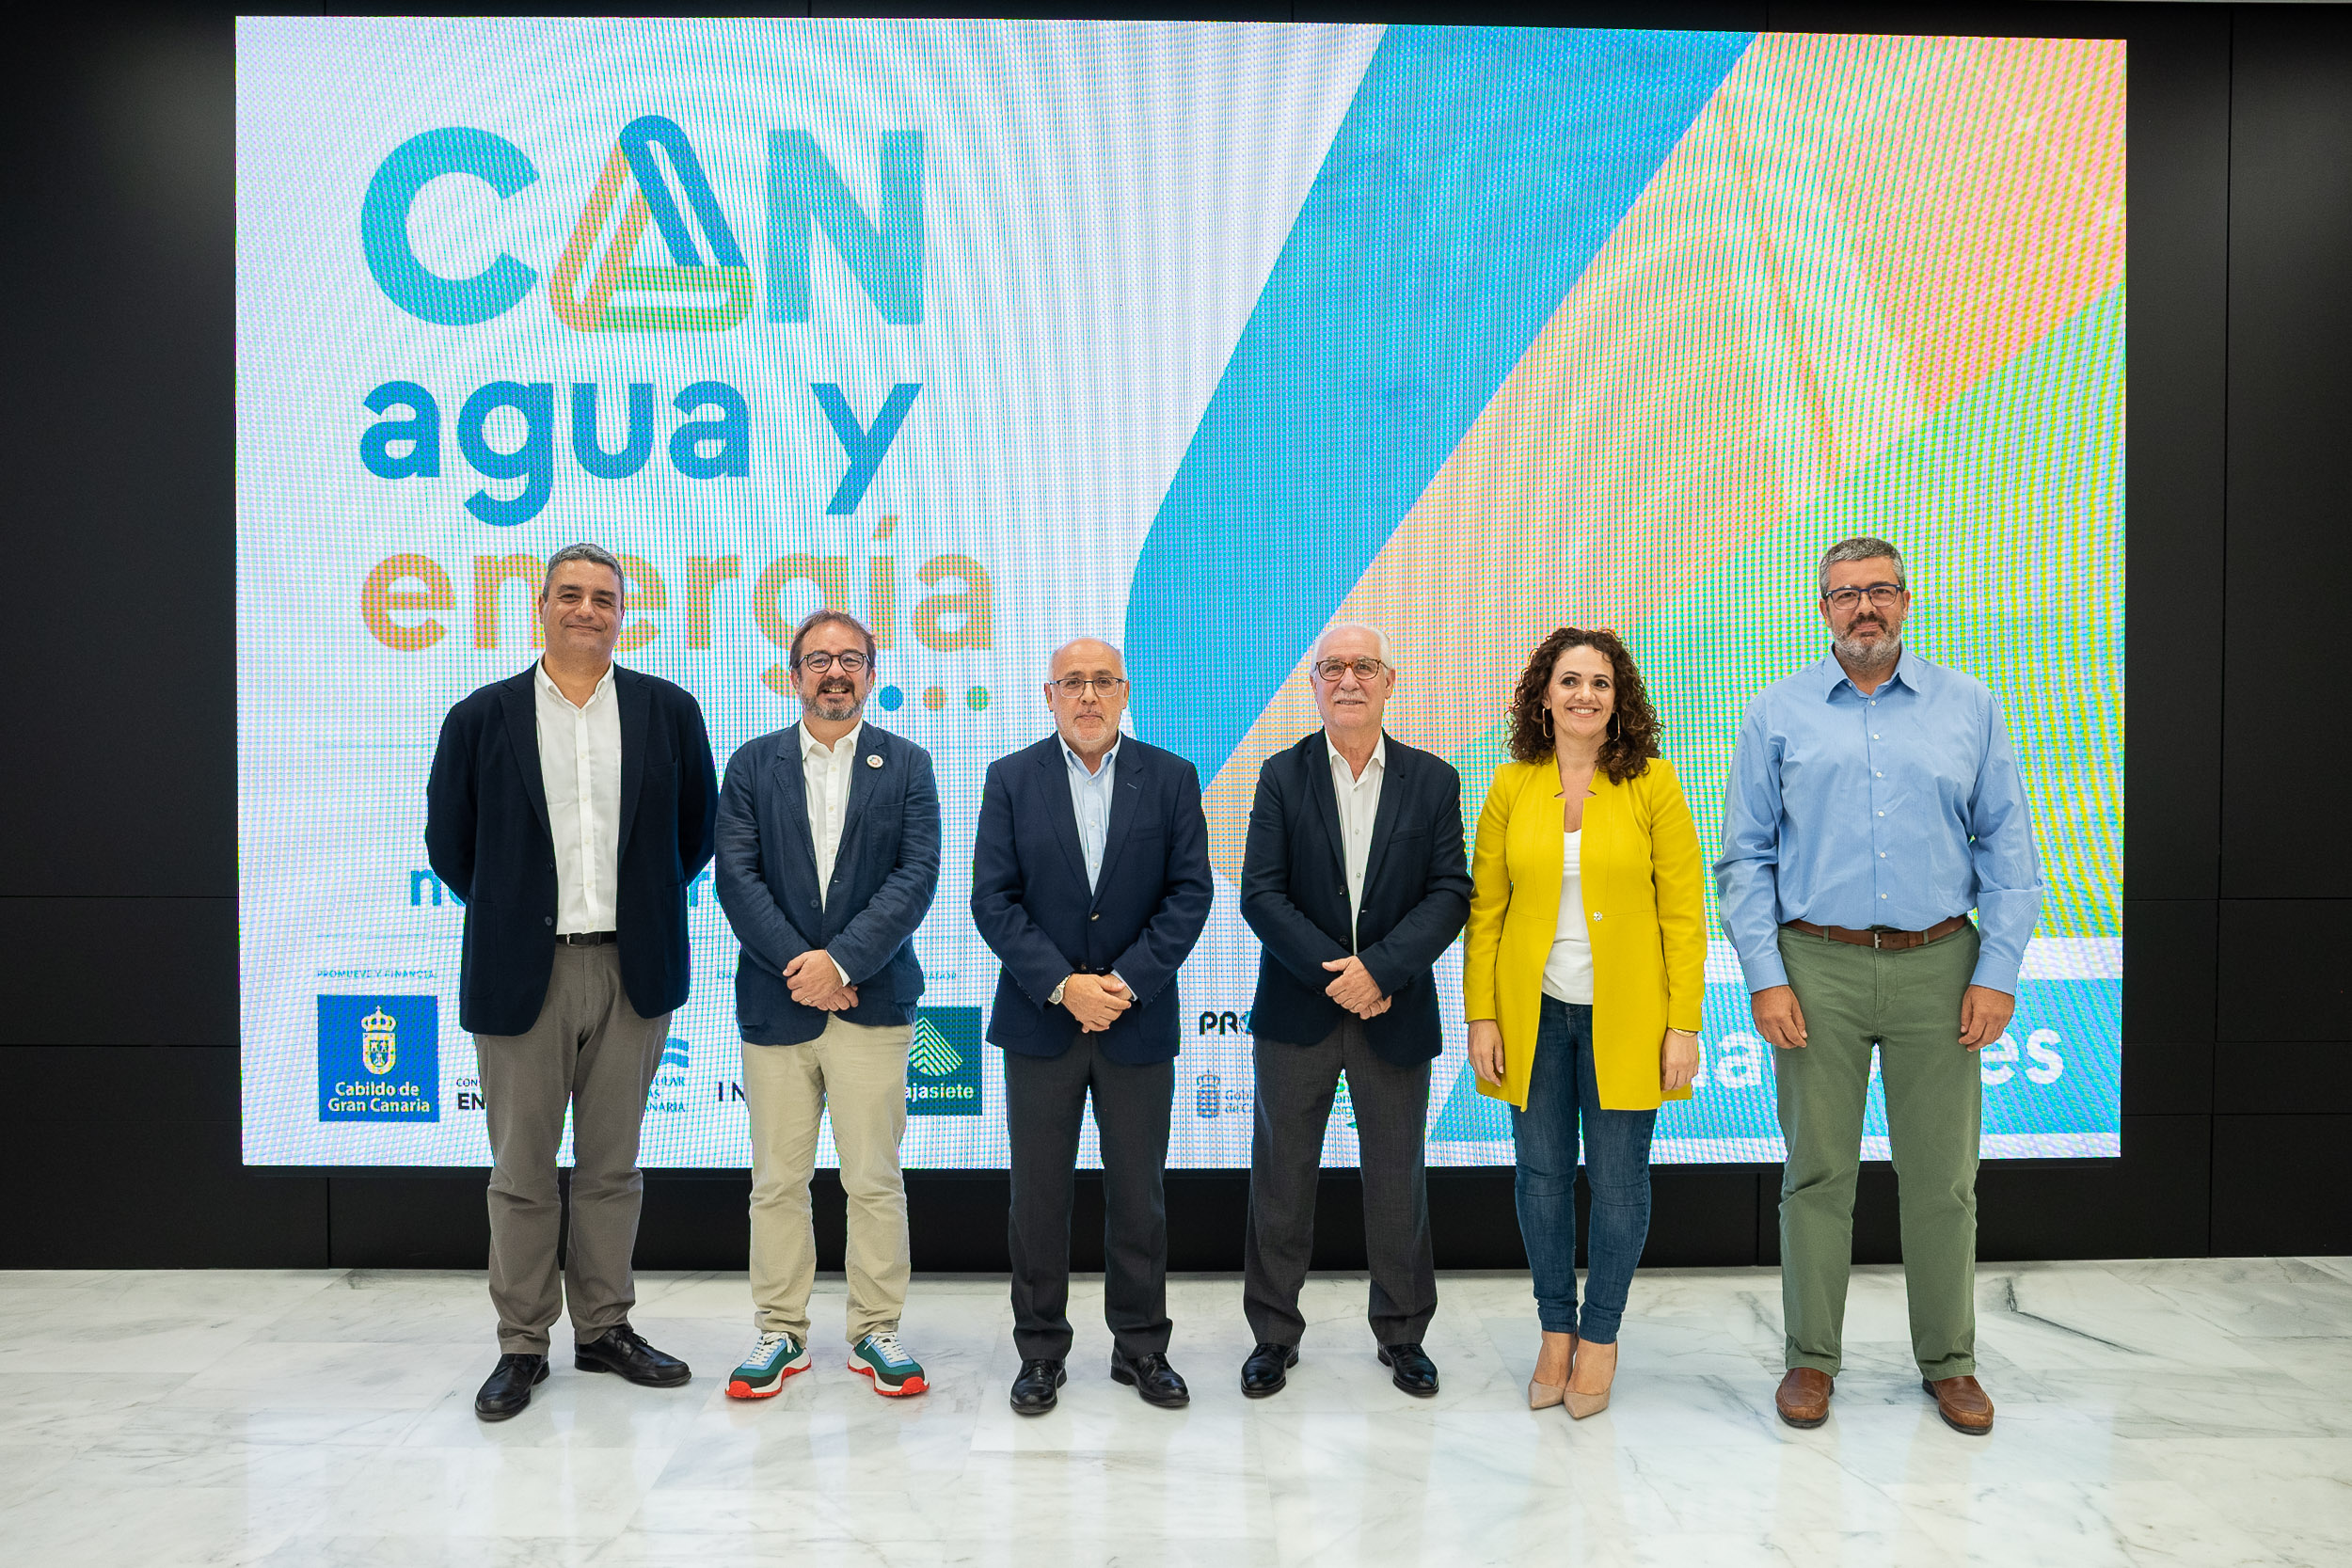 Canagua y Energía regresa a Infecar con récord de expositores y un amplio programa de jornadas técnicas